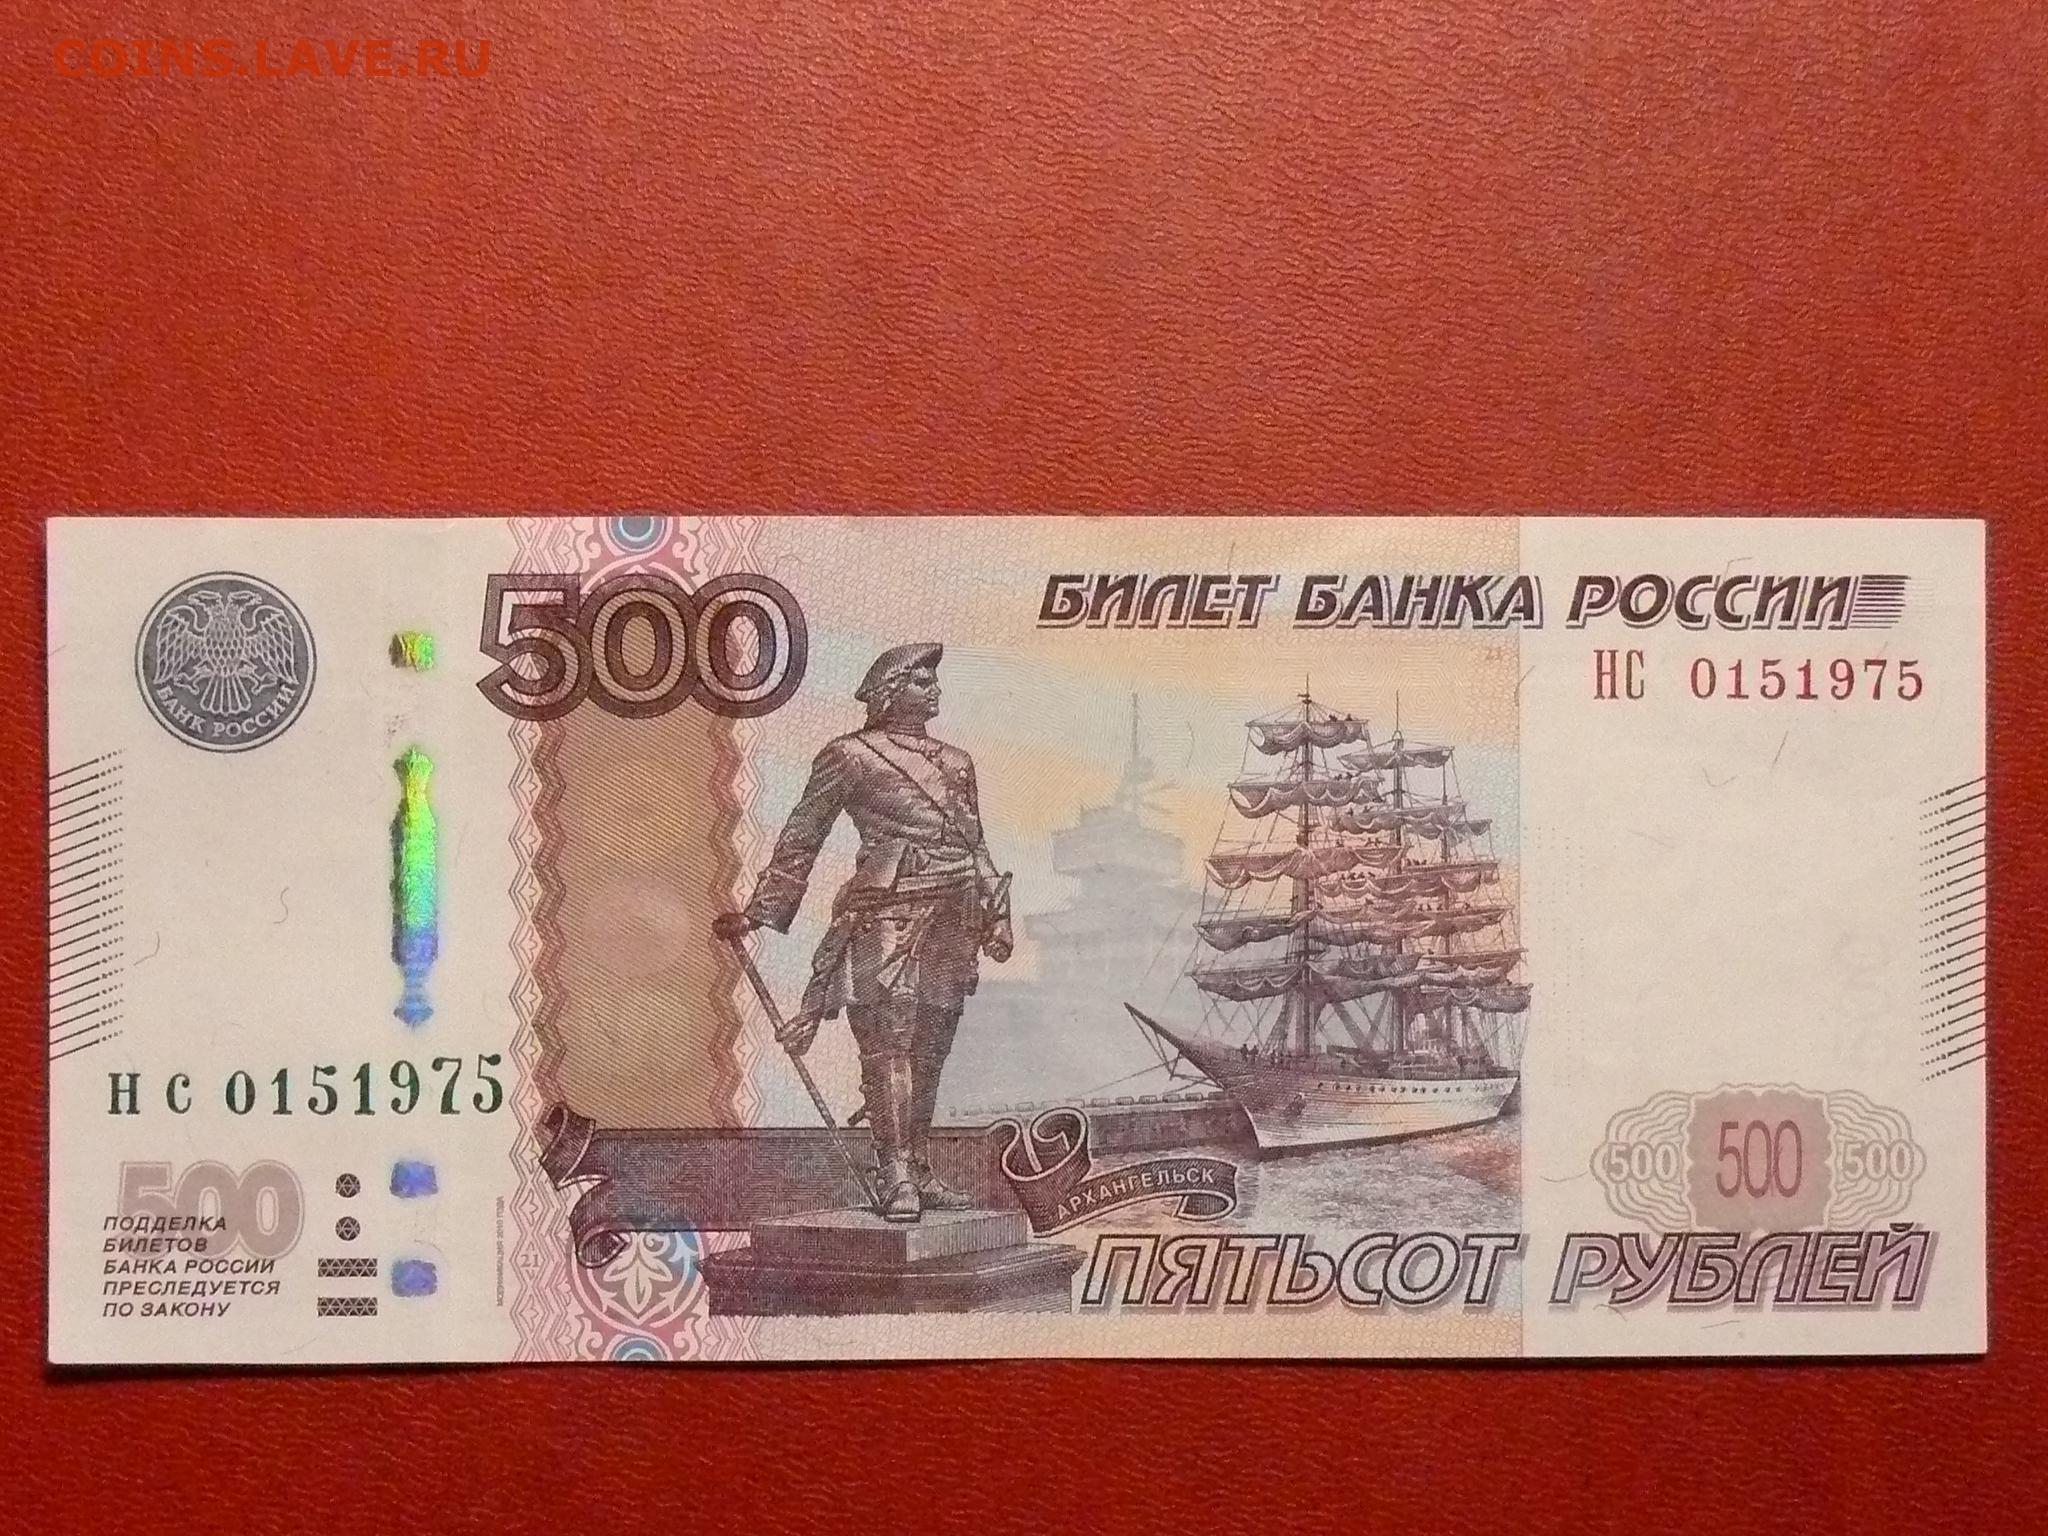 15 от 500 рублей. Купюра 500 рублей. Банкнота 500 рублей. Номер купюры. Красивые номера на банкнотах.